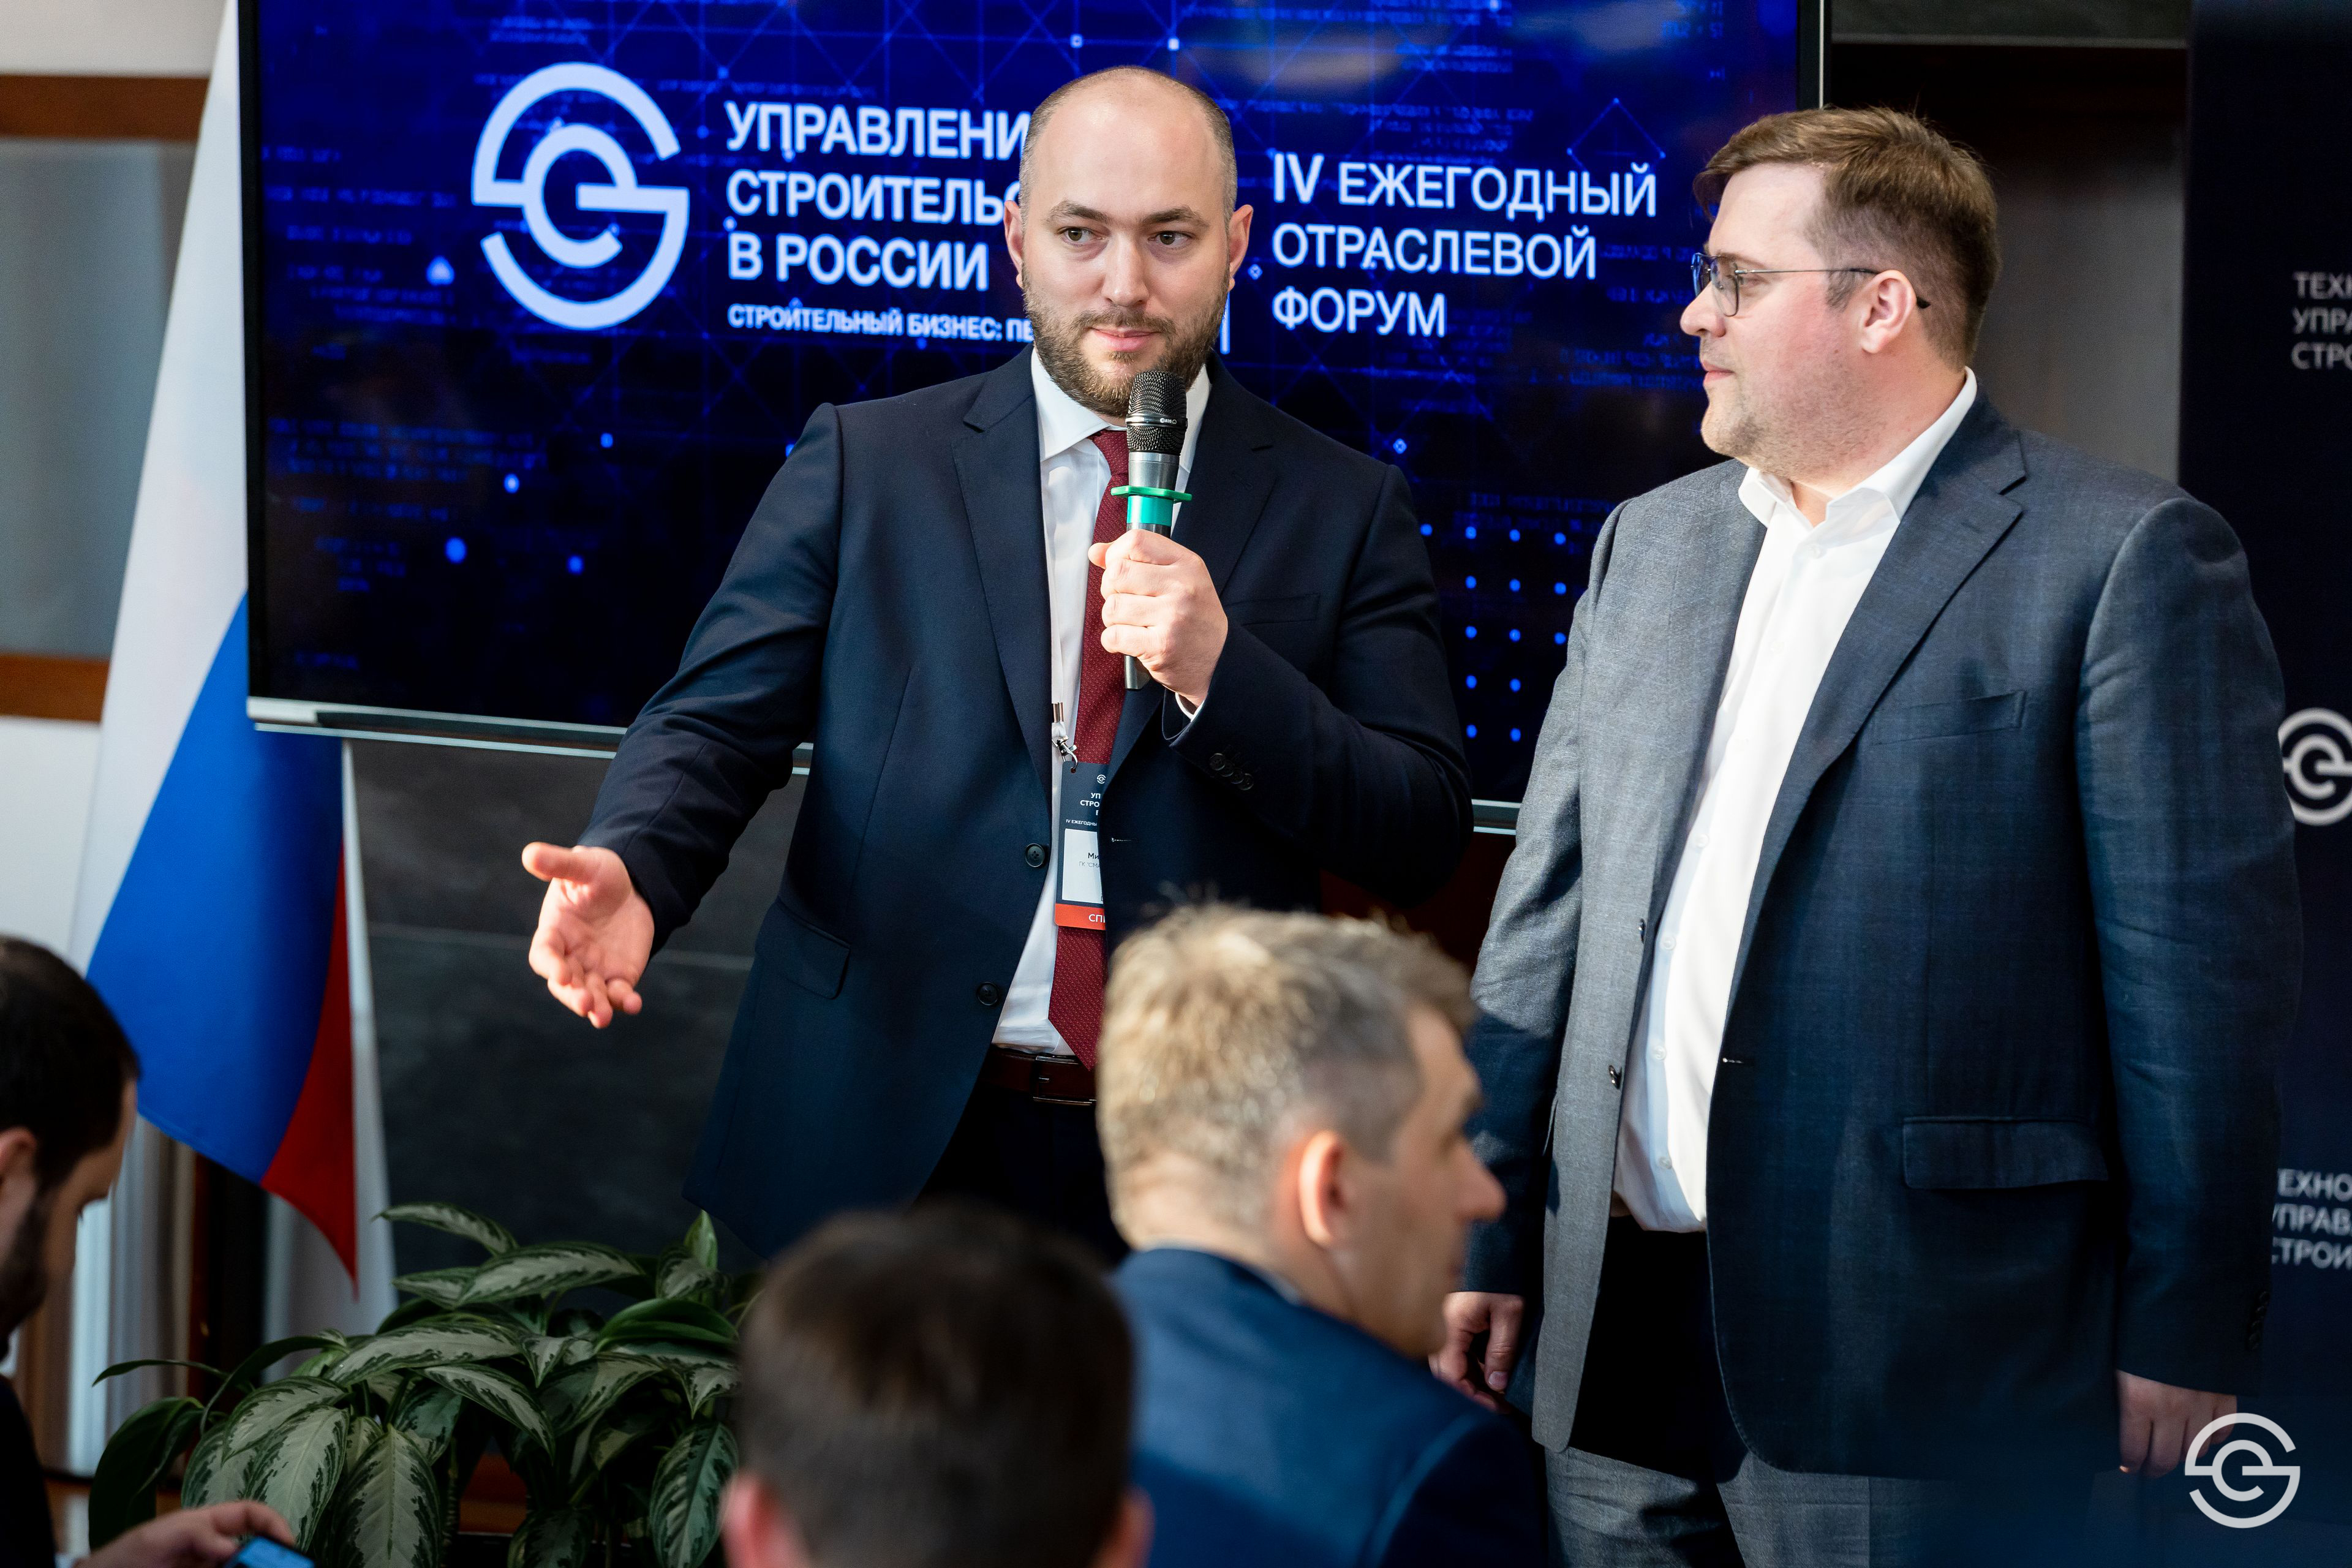 Хусейн Плиев и Алексей Никитин (ГК SMART ENGINEERS) на IV Ежегодном отраслевом форуме